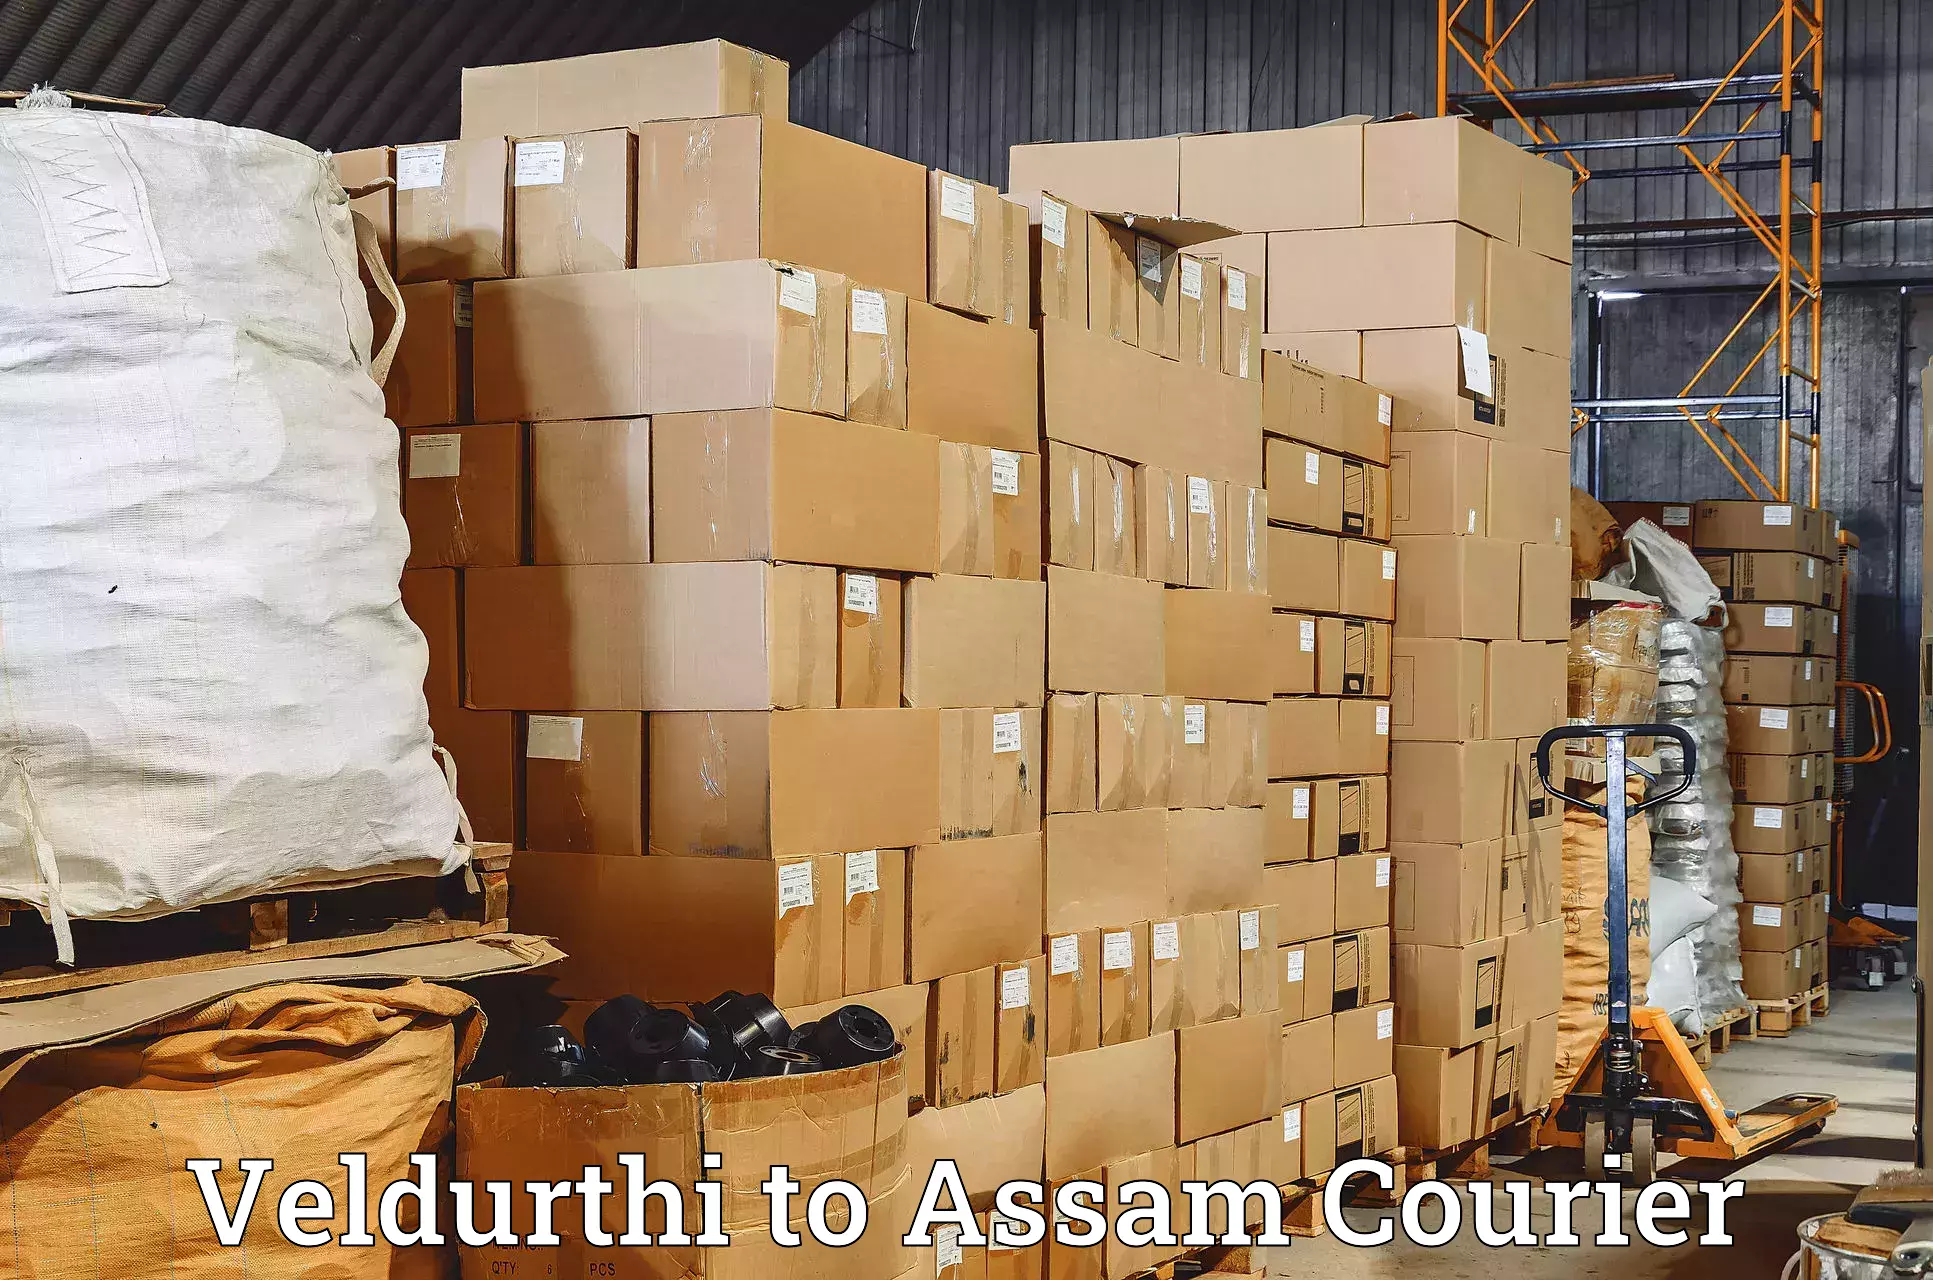 Modern courier technology Veldurthi to Assam